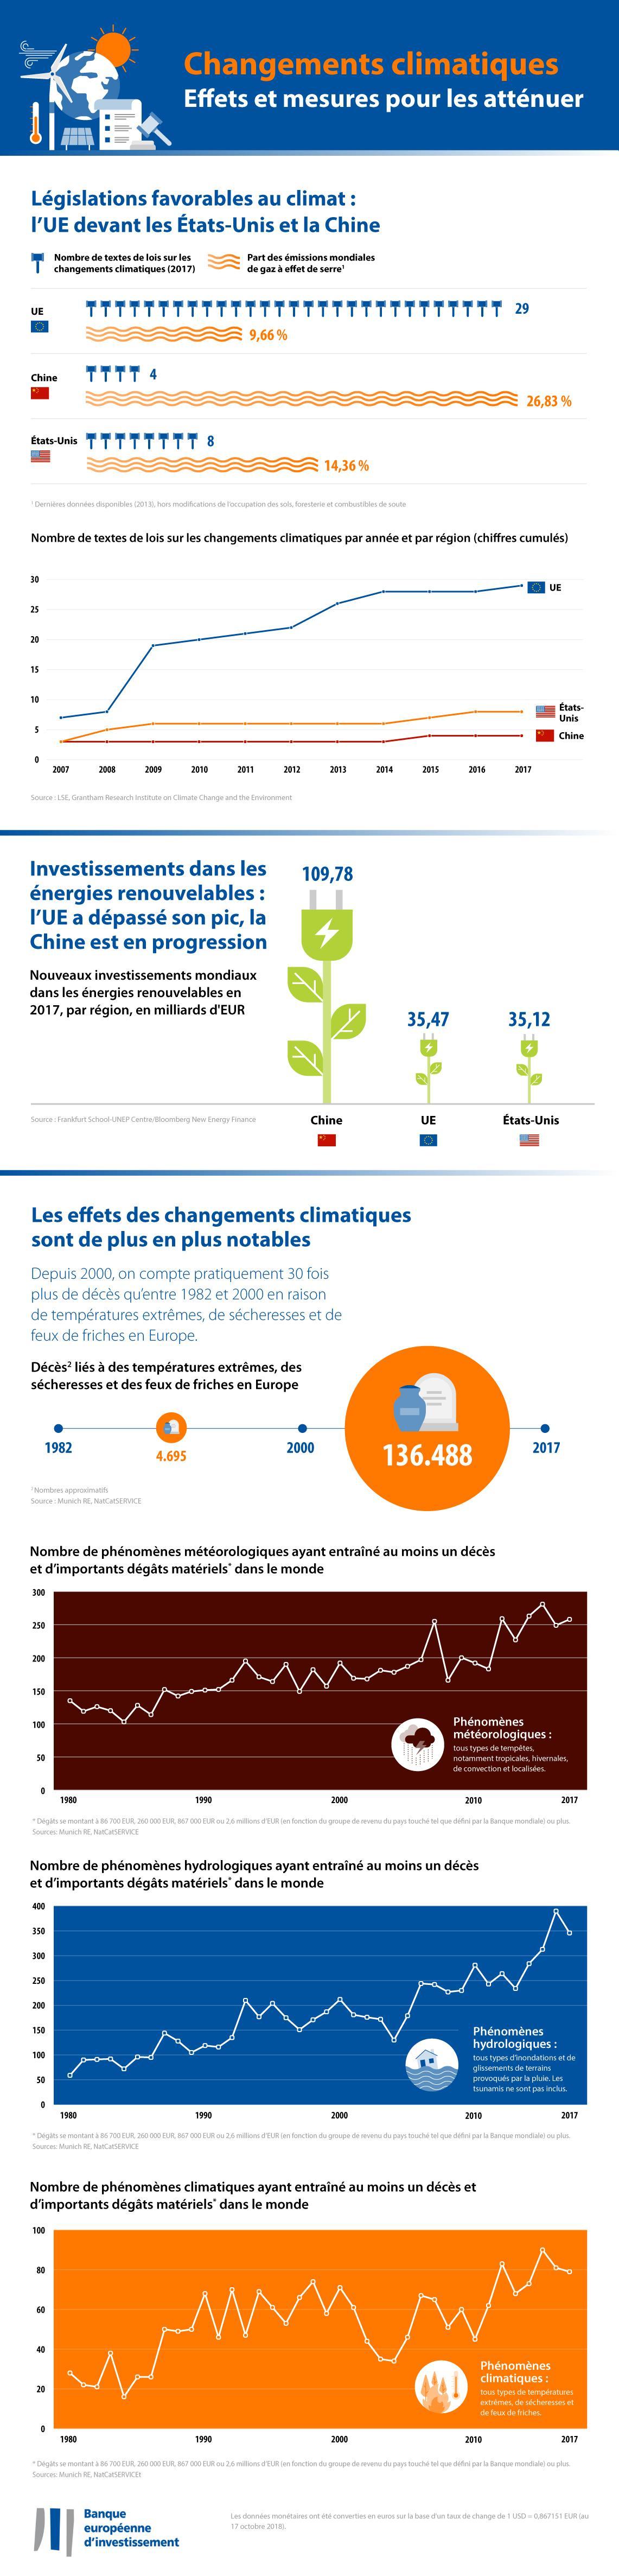 EIB climate survey 2018